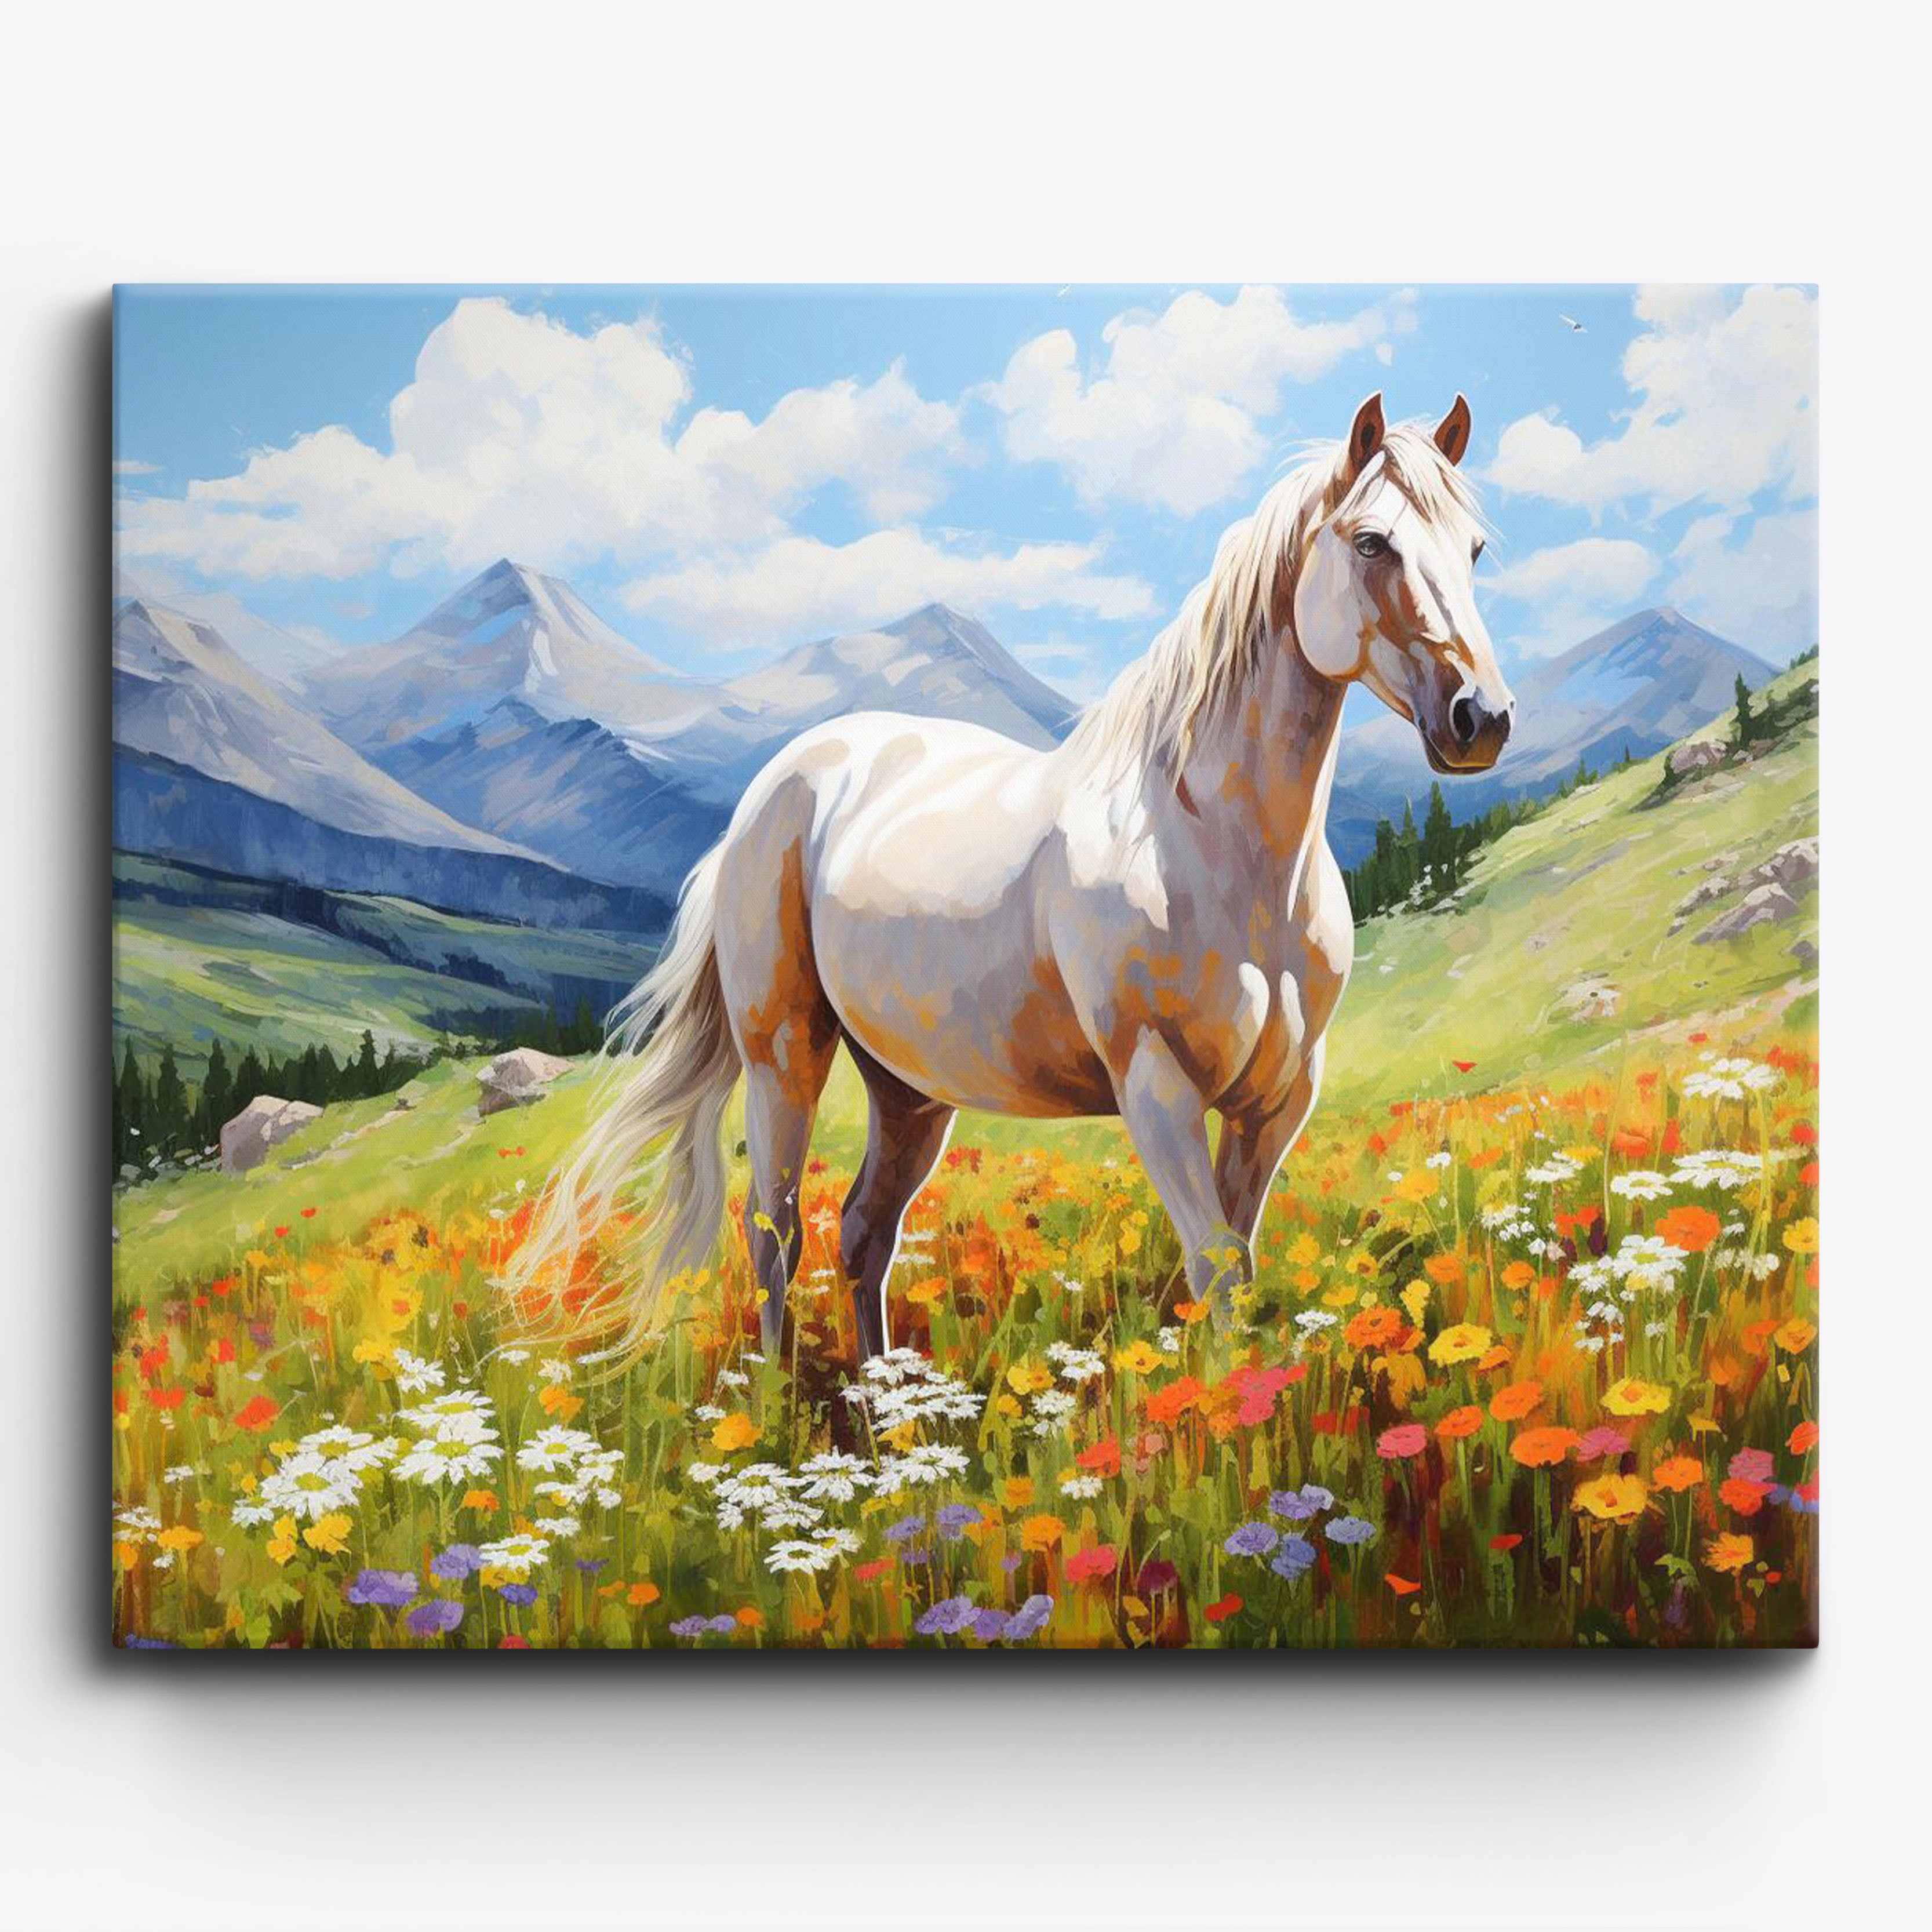 Le cheval blanc de Meadow's Grace